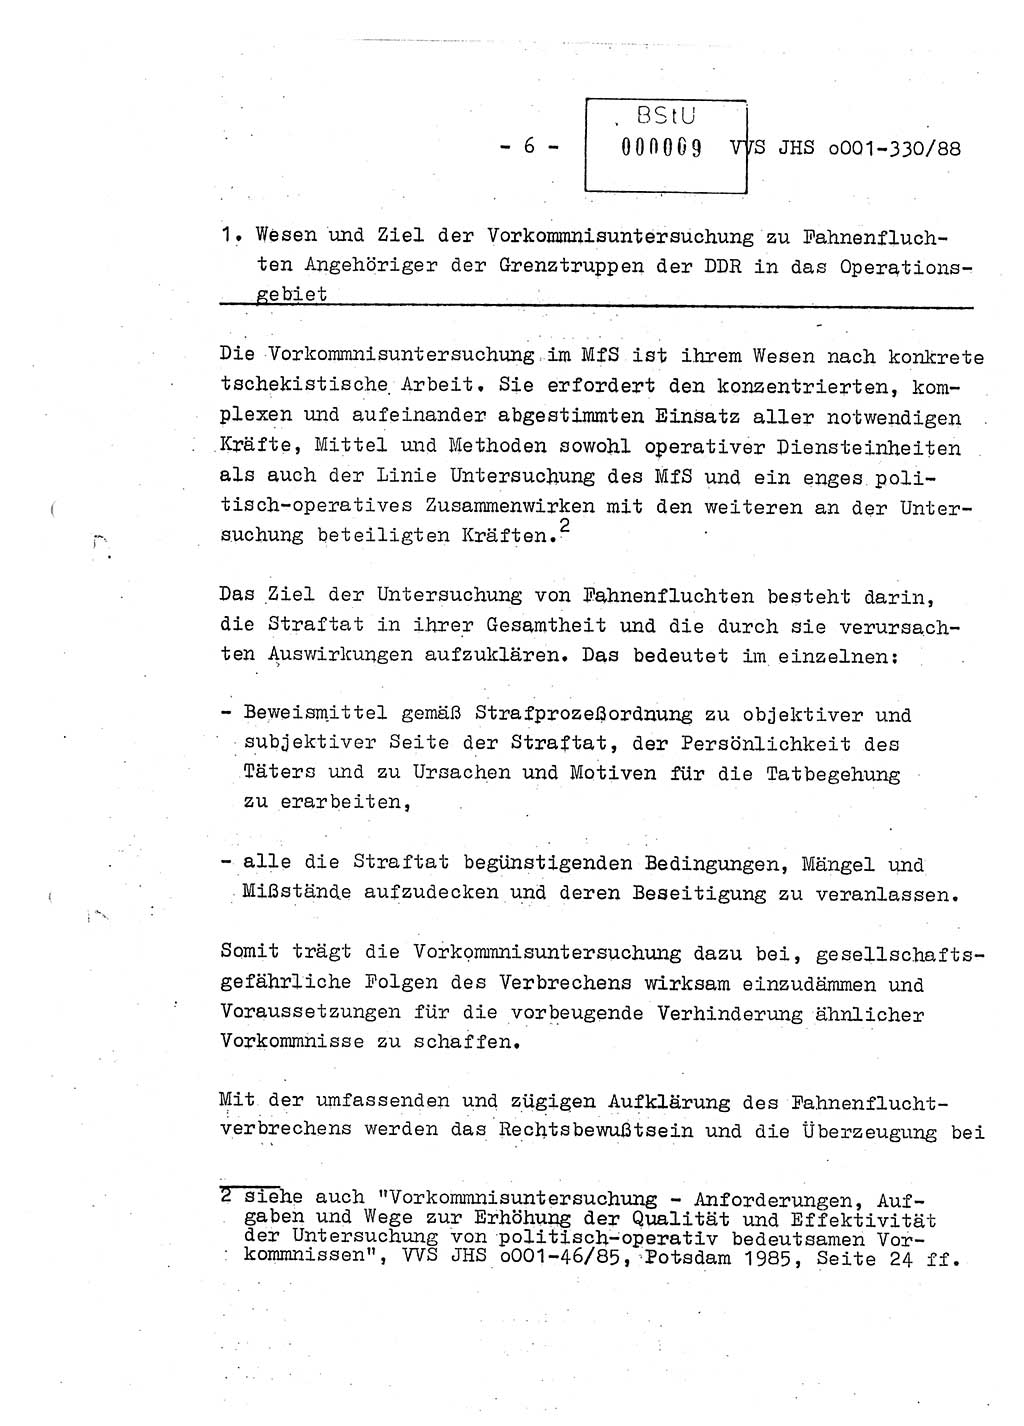 Diplomarbeit Offiziersschüler Thomas Mühle (HA Ⅸ/6), Ministerium für Staatssicherheit (MfS) [Deutsche Demokratische Republik (DDR)], Juristische Hochschule (JHS), Vertrauliche Verschlußsache (VVS) o001-330/88, Potsdam 1988, Seite 6 (Dipl.-Arb. MfS DDR JHS VVS o001-330/88 1988, S. 6)